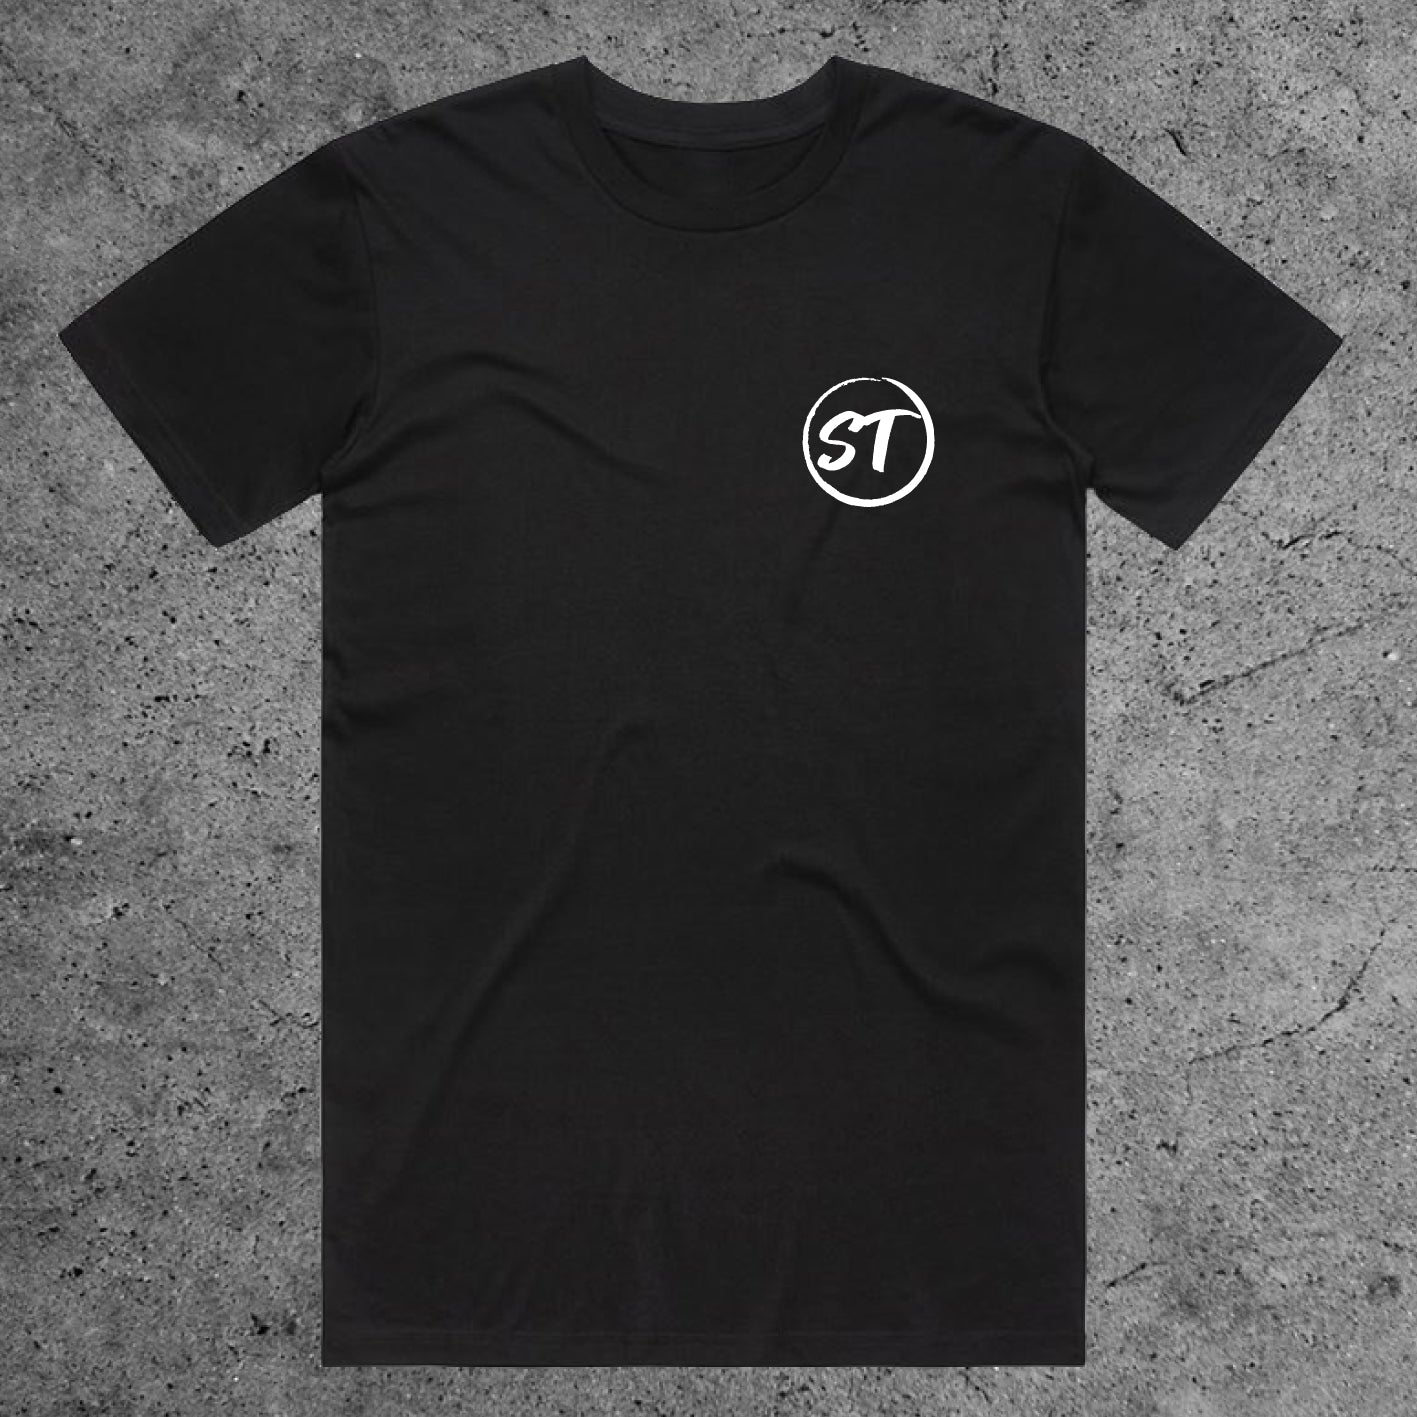 Seven Threads T-Shirt